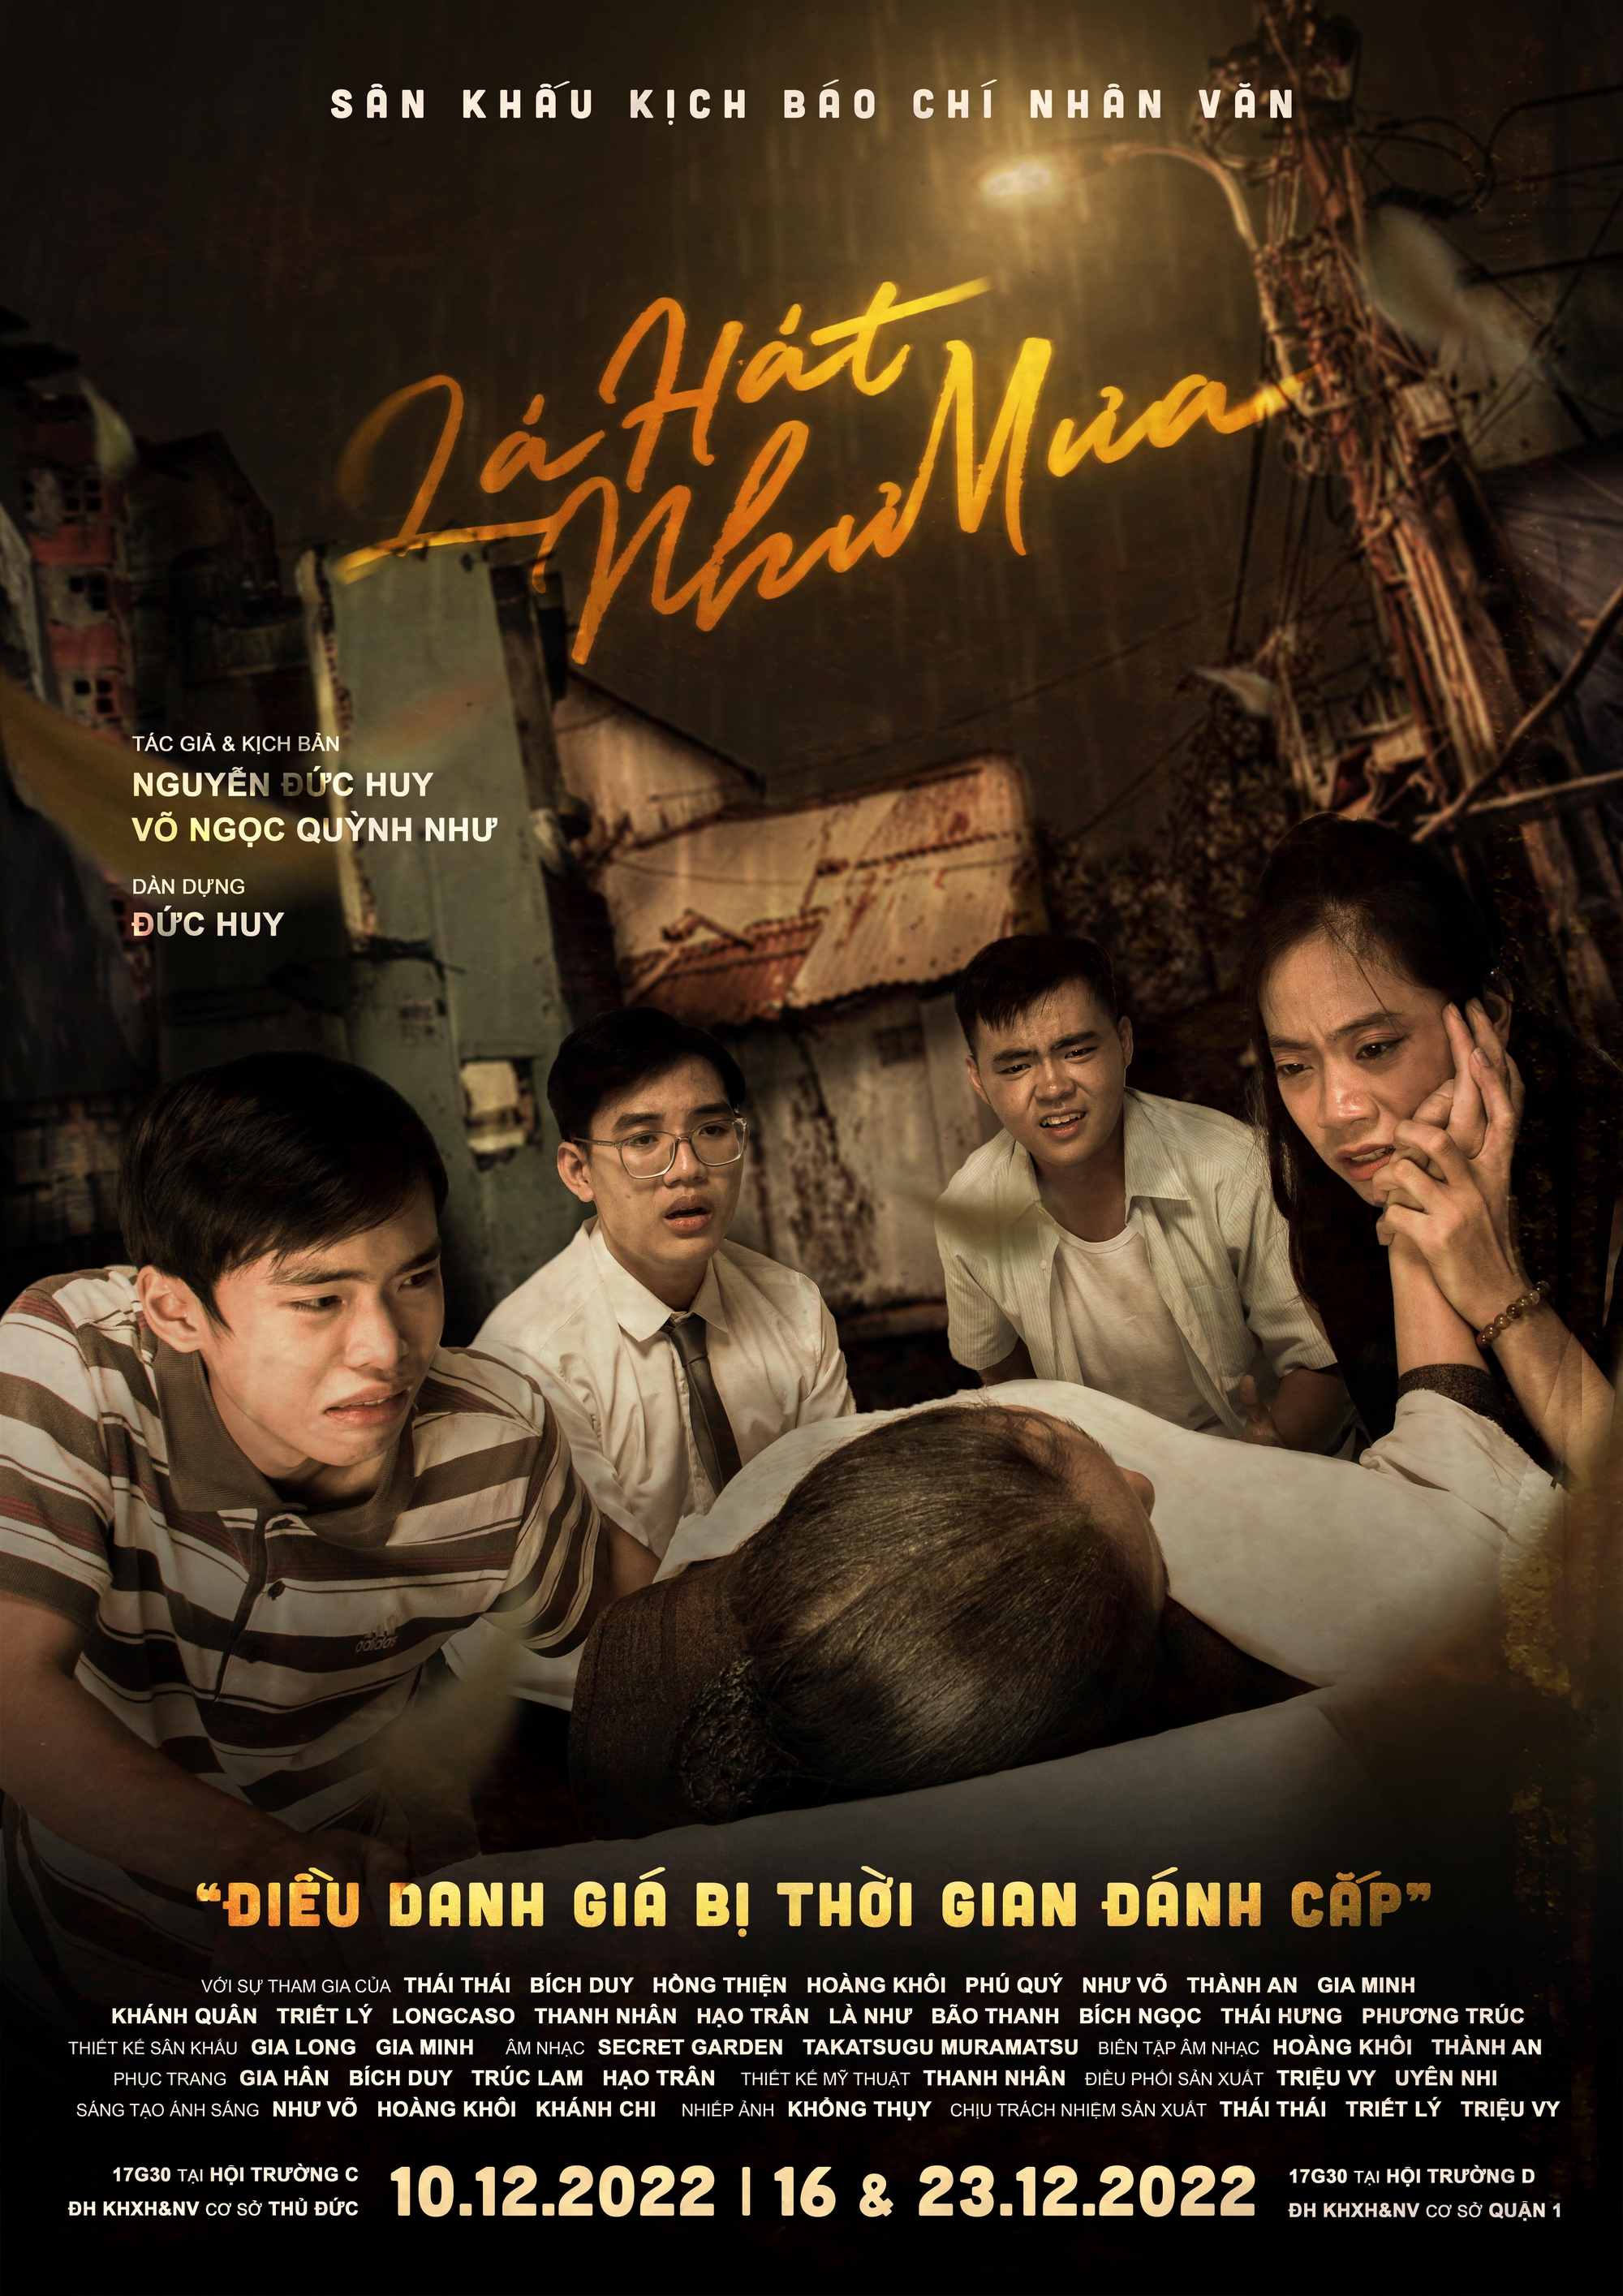 Sinh viên báo chí làm kịch chuyên nghiệp, lấy cảm hứng từ tình người Sài Gòn xưa - Ảnh 1.